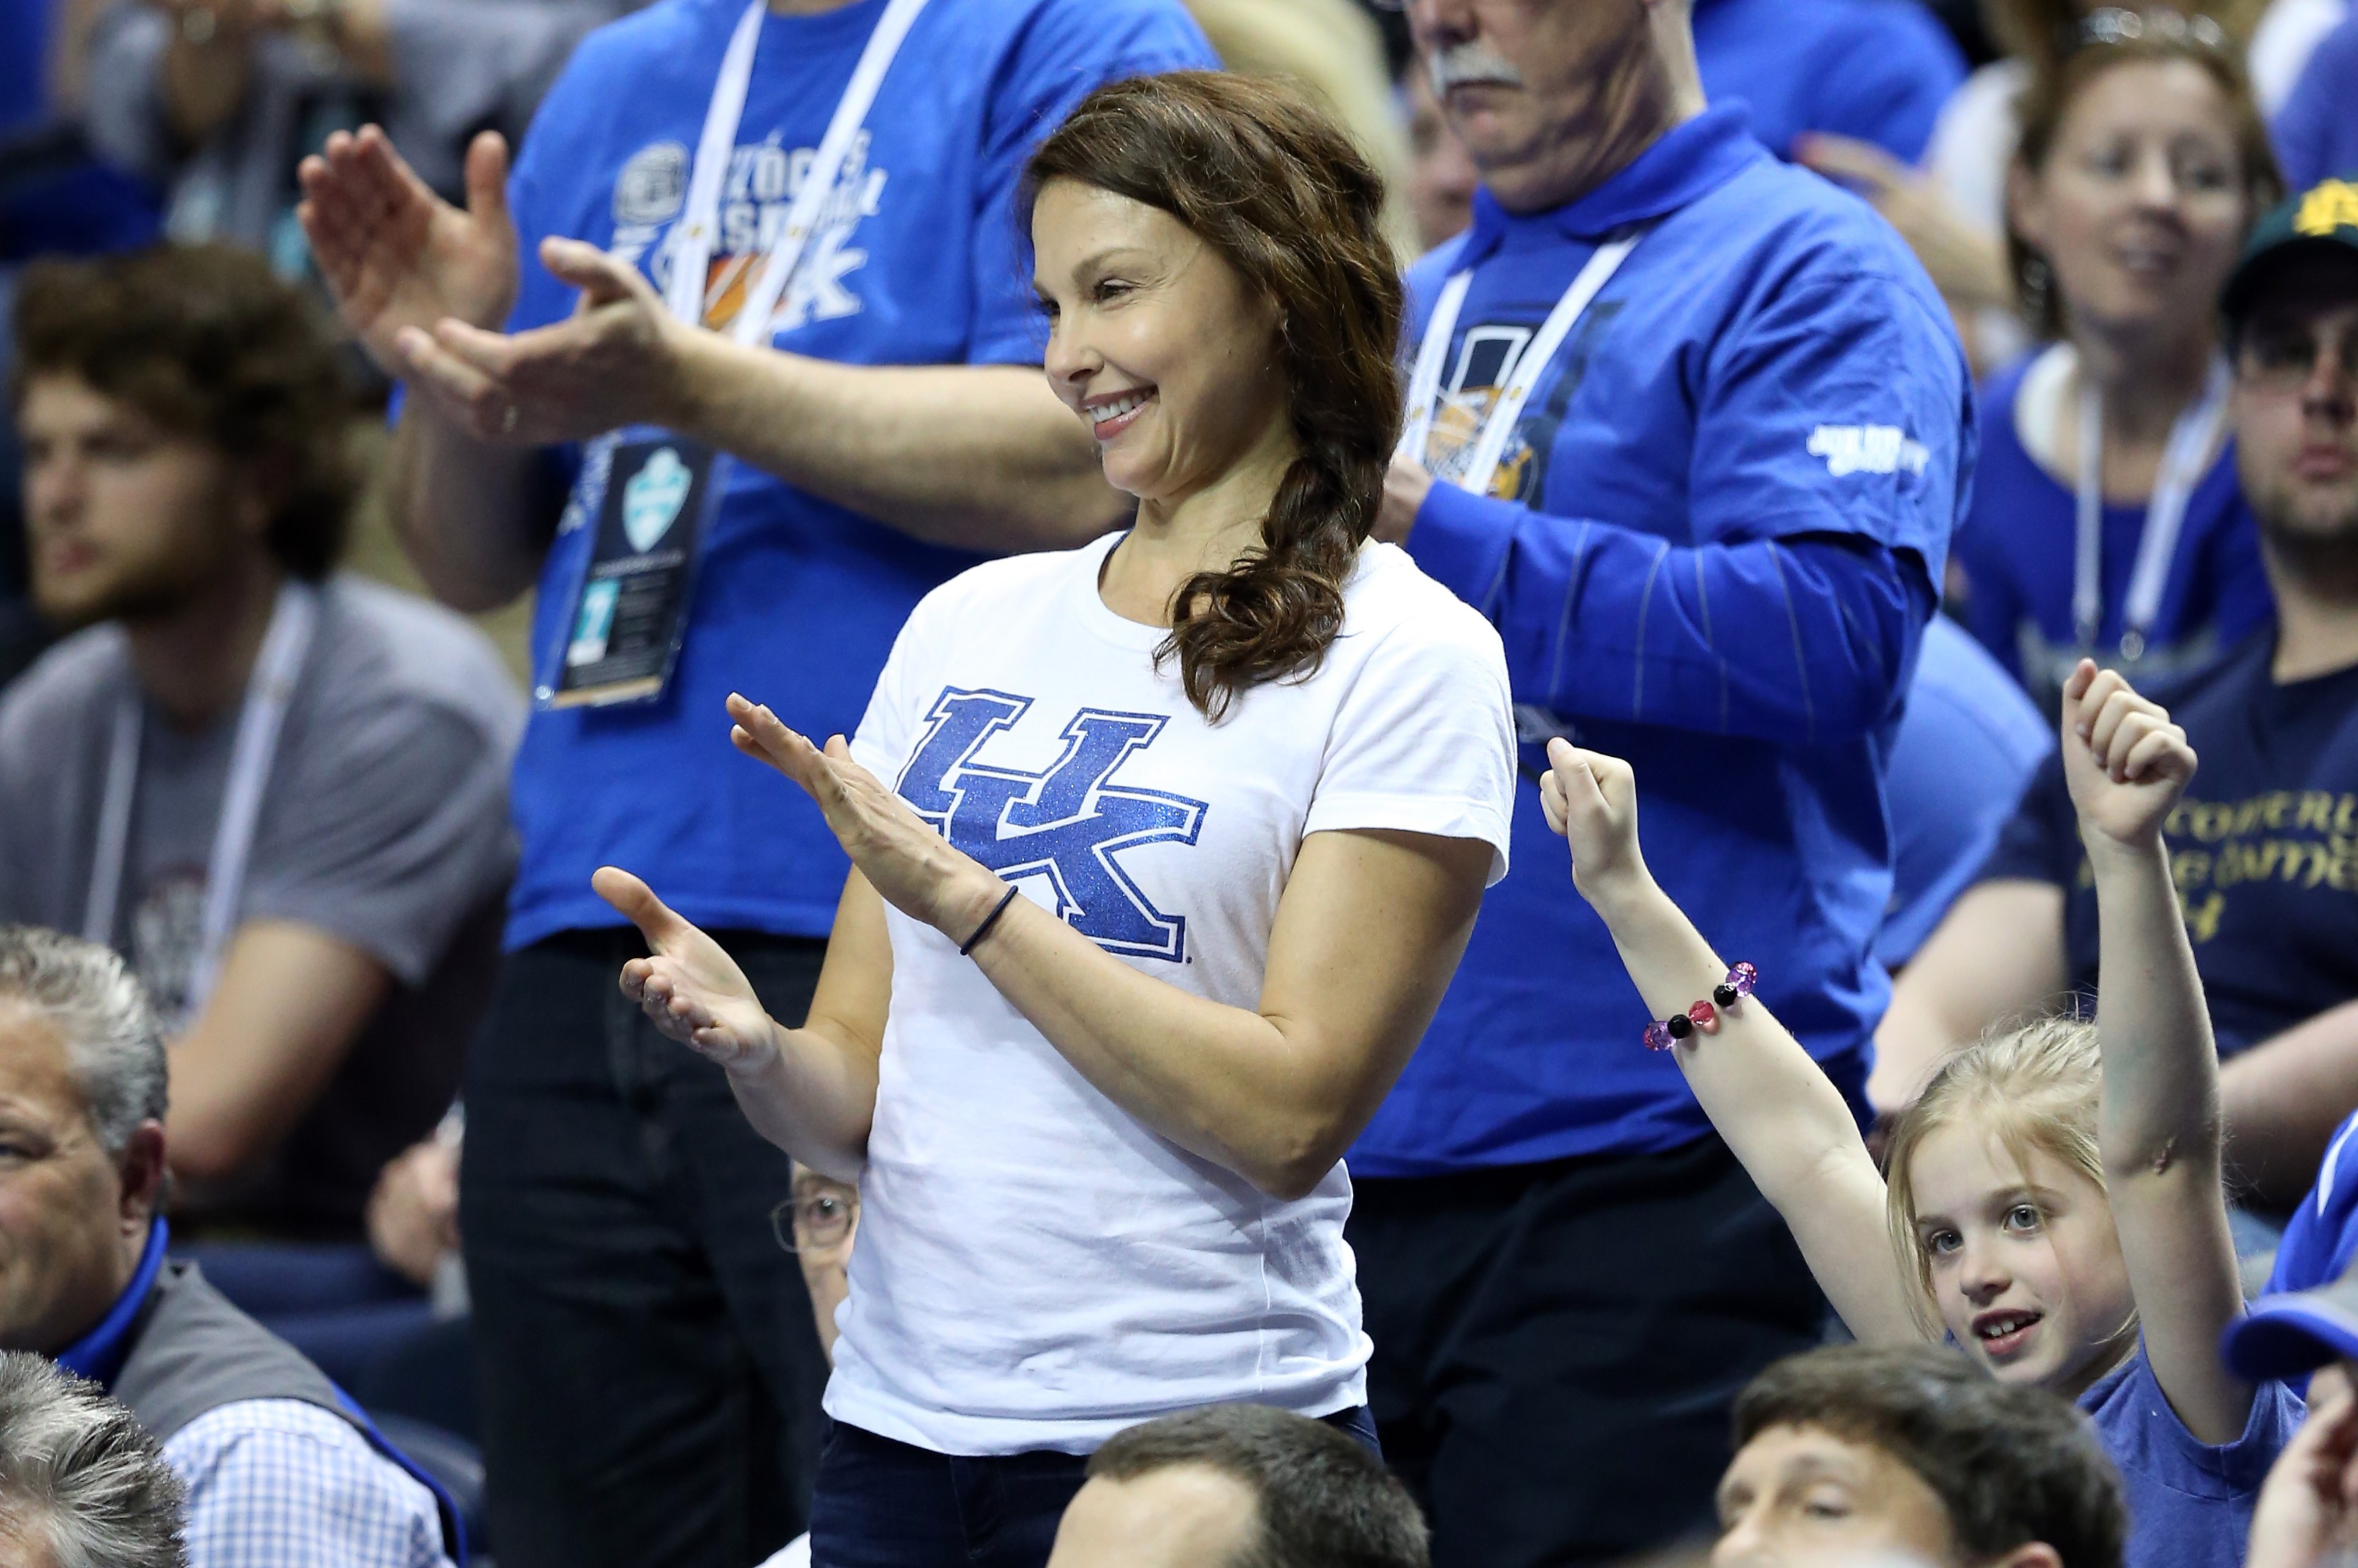 Ashley Judd durante partida de basquete dos times Kentucky X Arkansas, quando fez um comentário em seu Twitter e sofreu agressões pela internet (Foto: Getty Images)